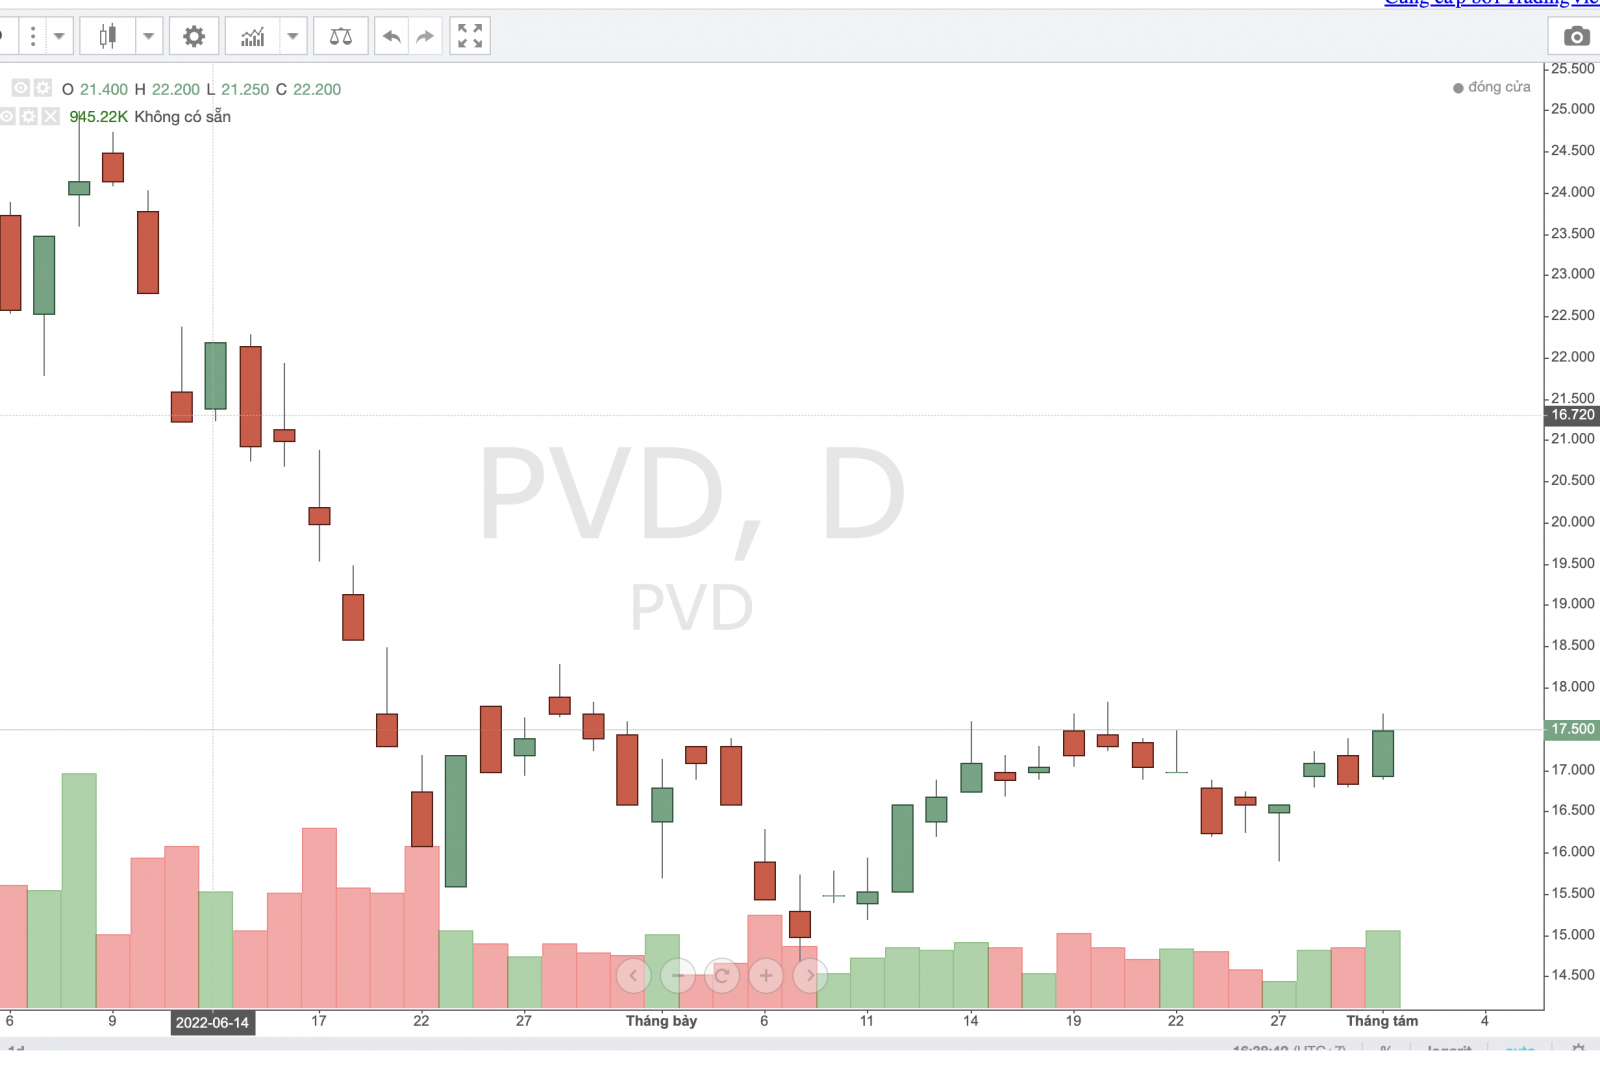 Cổ phiếu PVD mất 50% thị giá kể từ đỉnh